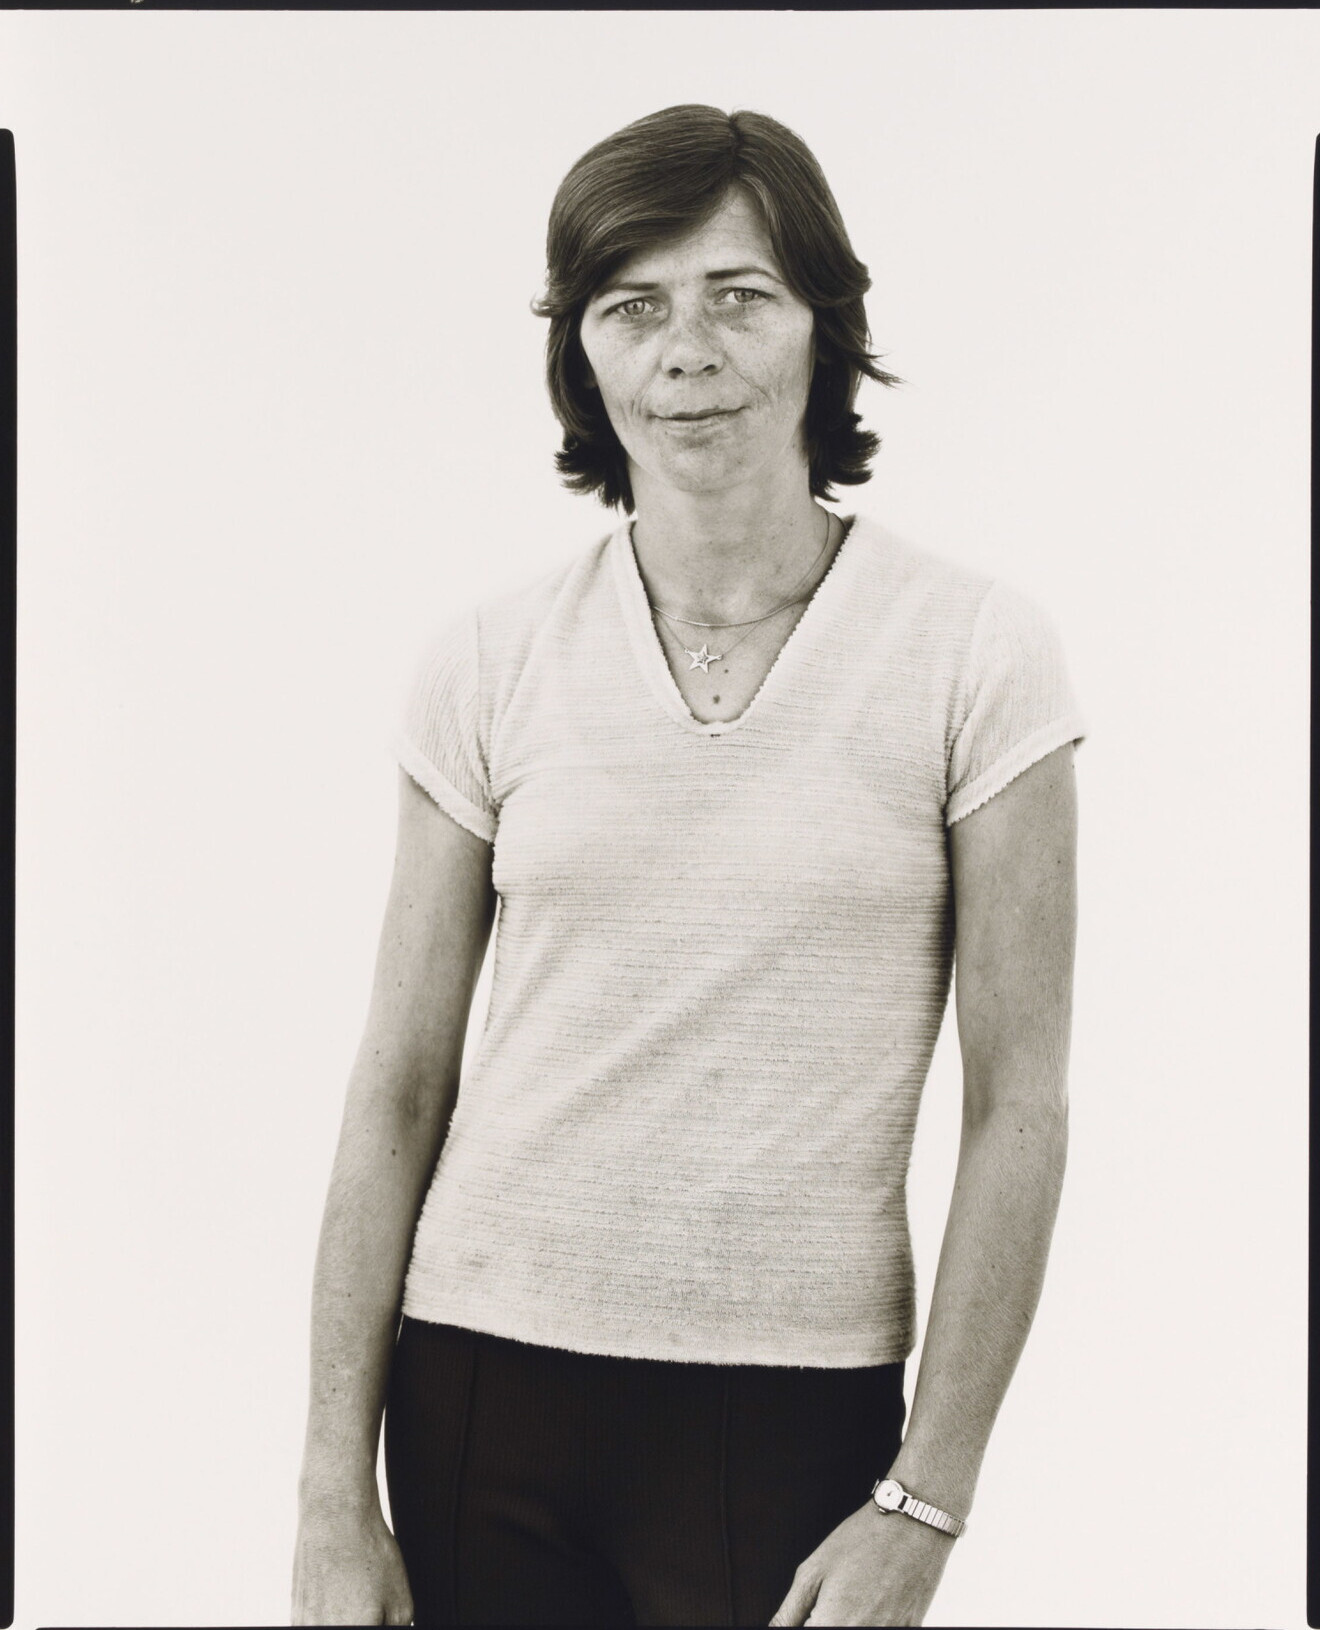 Глория Клауд, официантка, Хоббс, Нью-Мексико, 1980 г. Фотограф Ричард Аведон